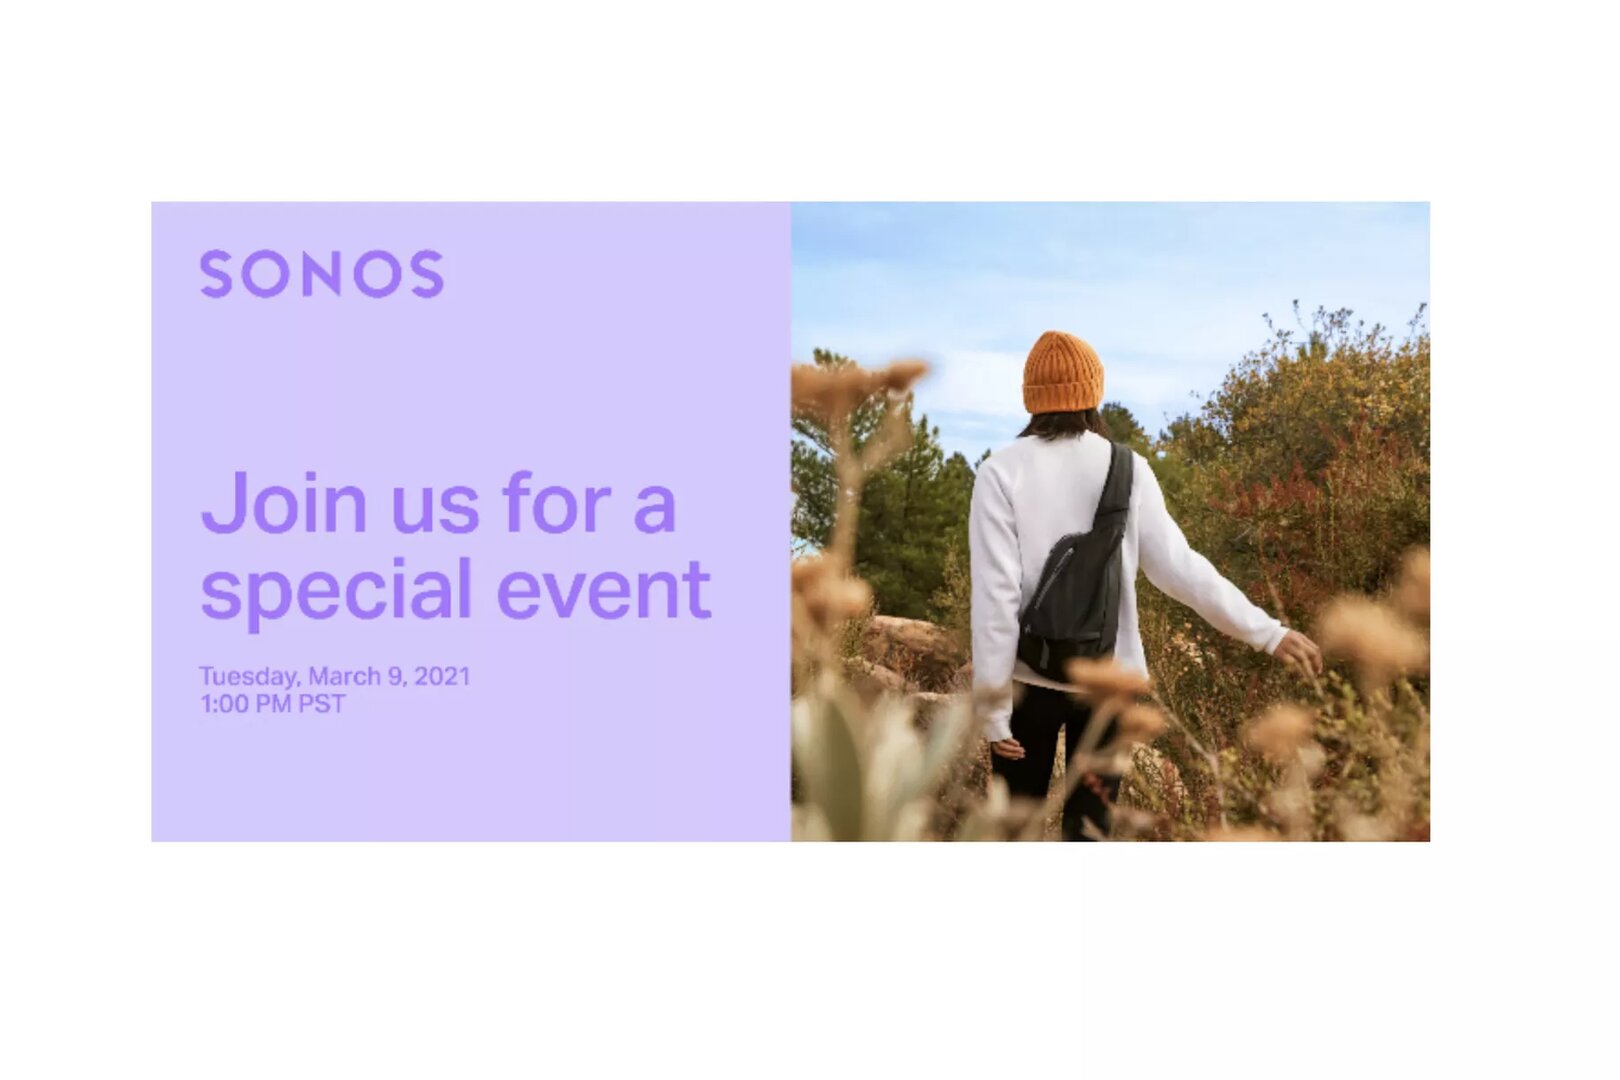 Einladung von Sonos zum Event am 9. März